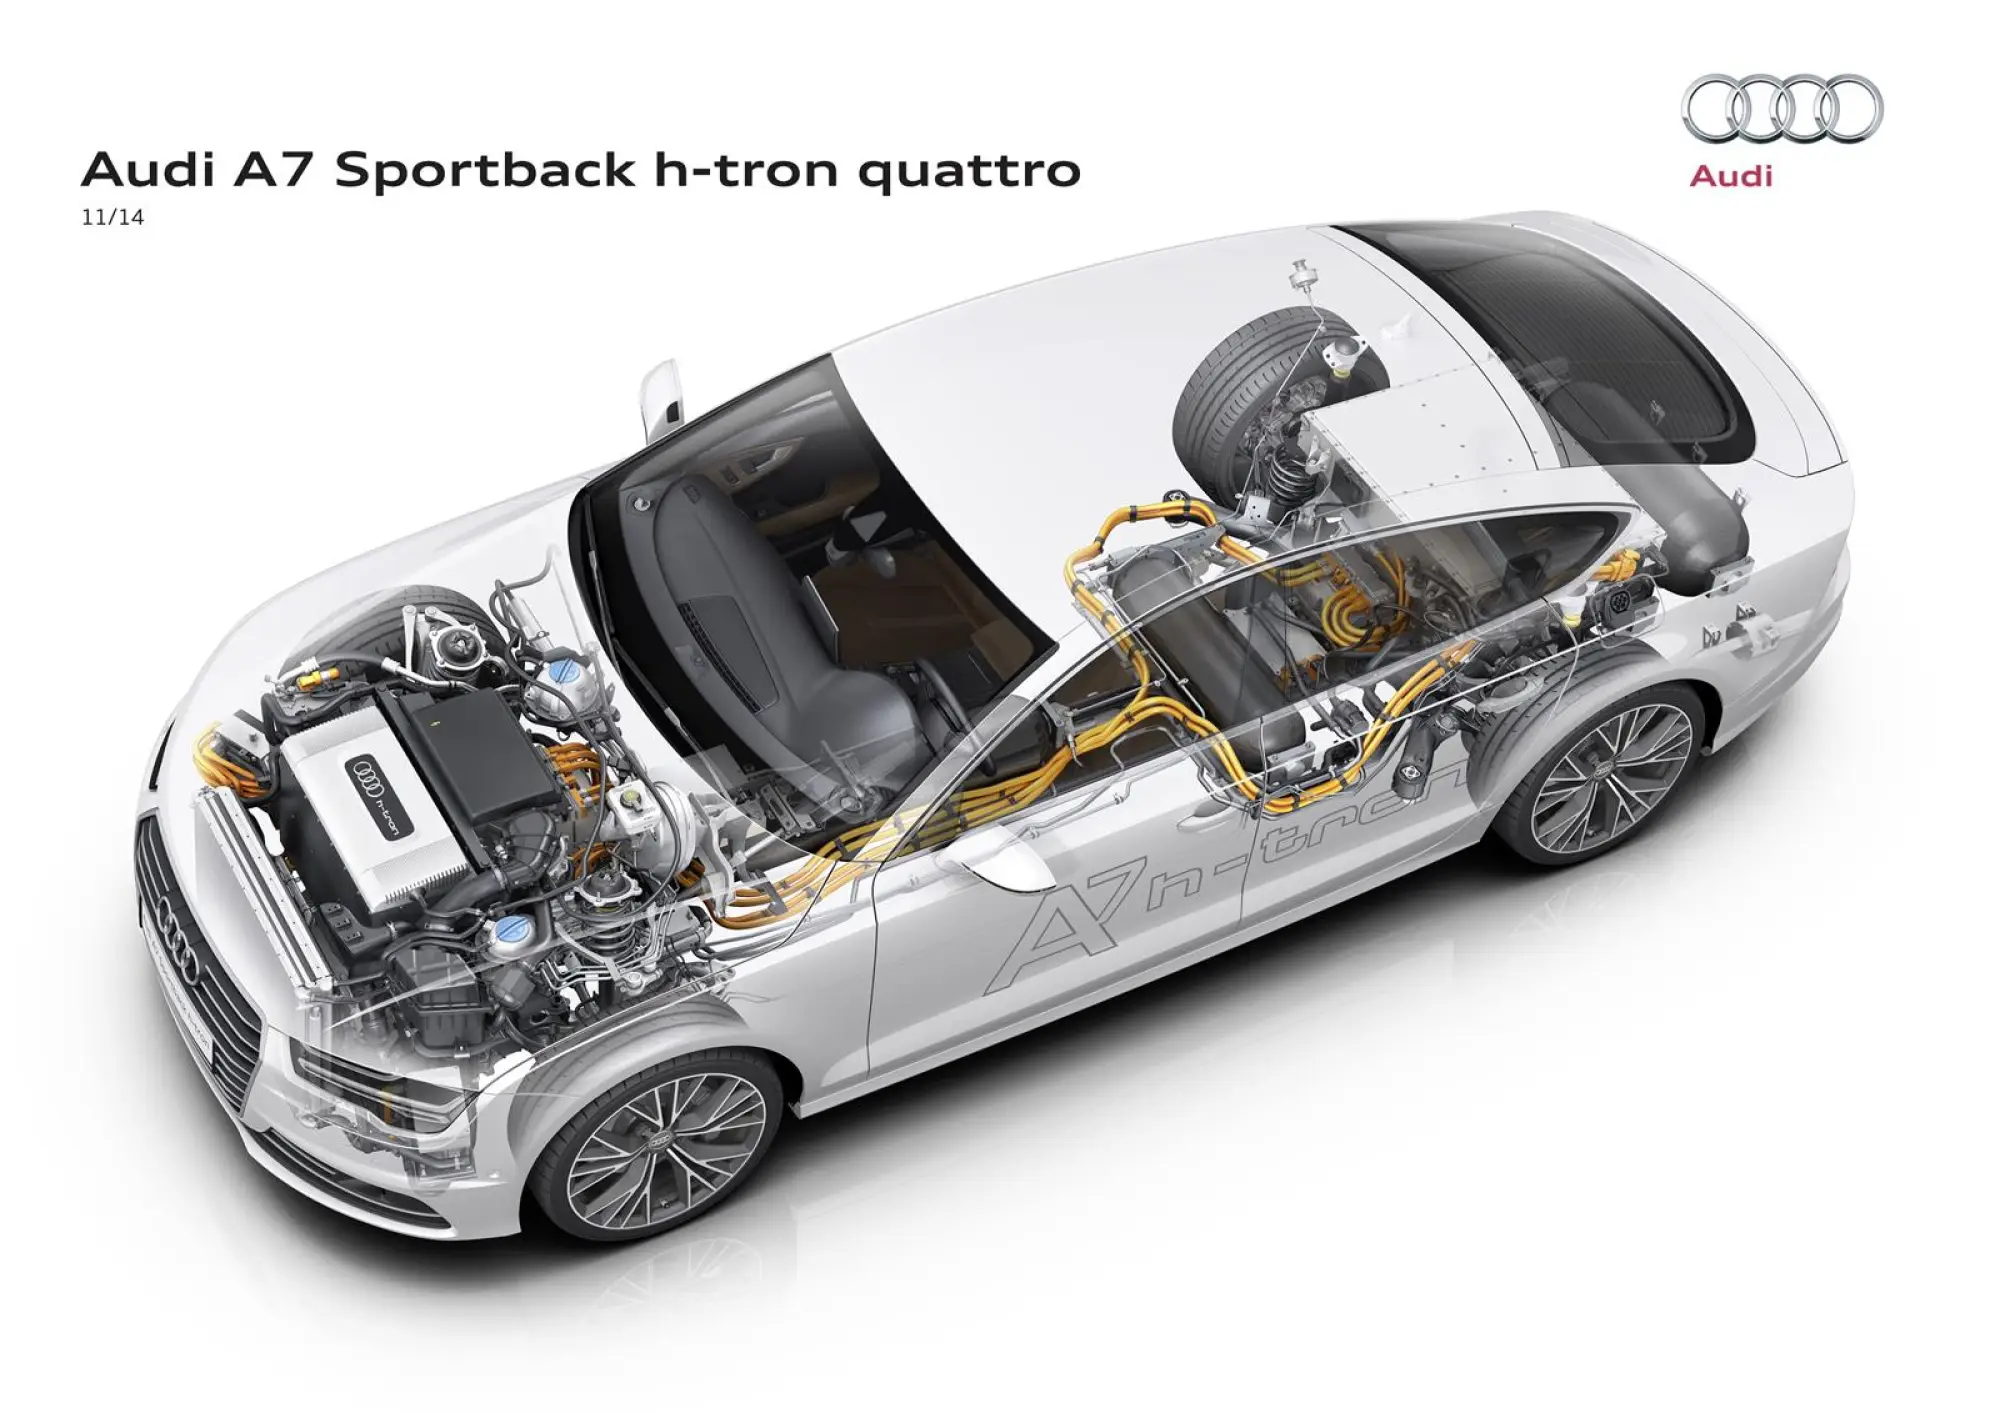 Audi A7 Sportback h-tron quattro concept - 10